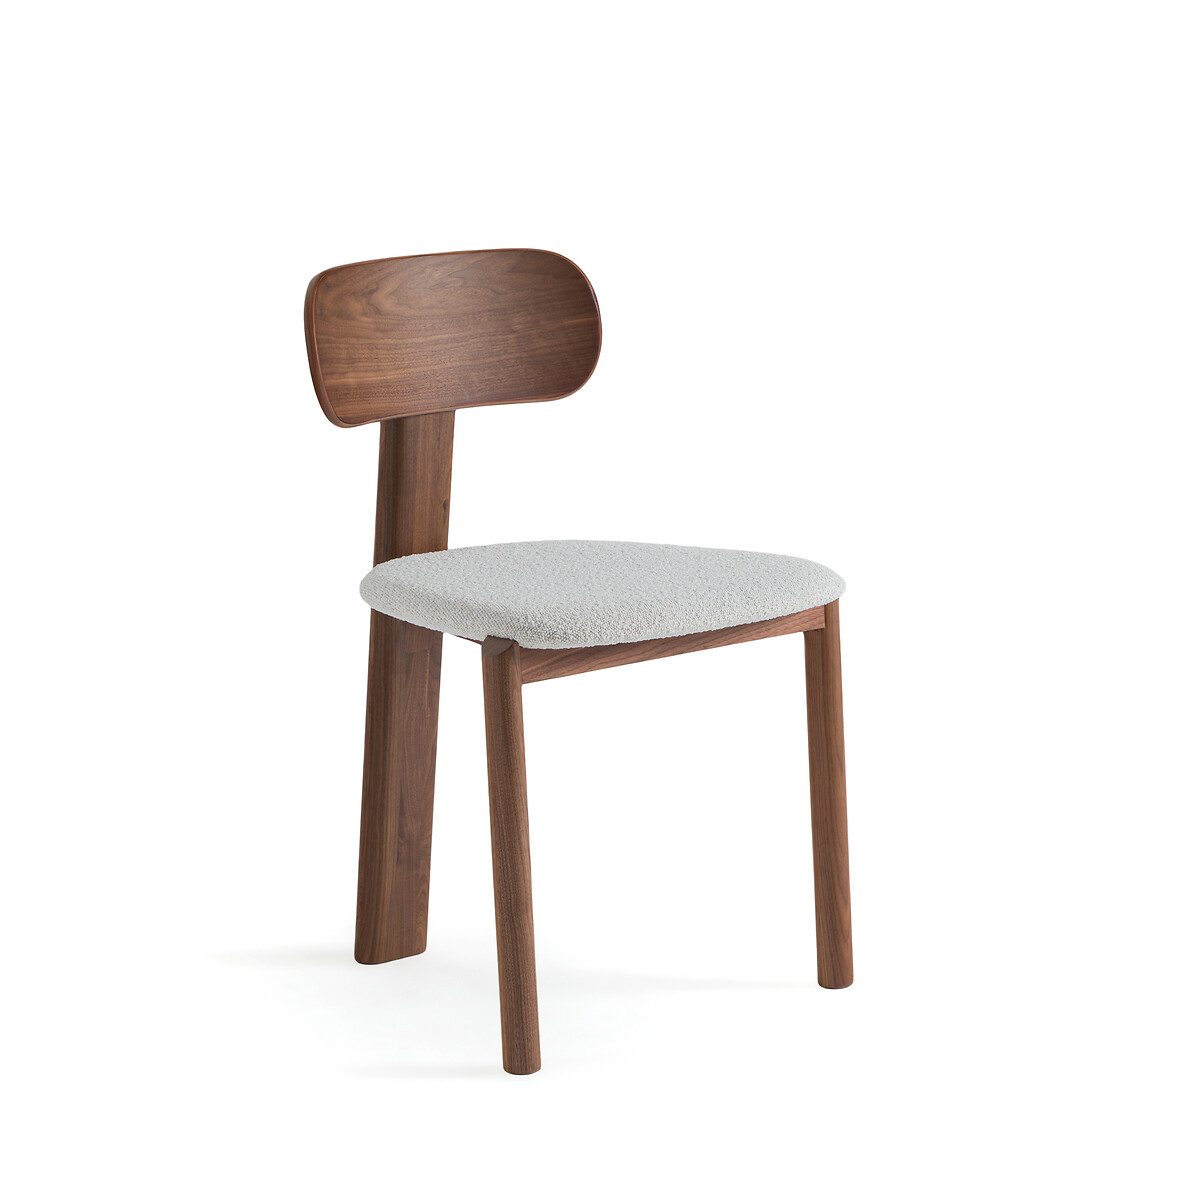 Стул с обивкой из буклированной ткани дизайн Э Галлина Marais единый размер каштановый стул marais дизайн э галлина единый размер каштановый